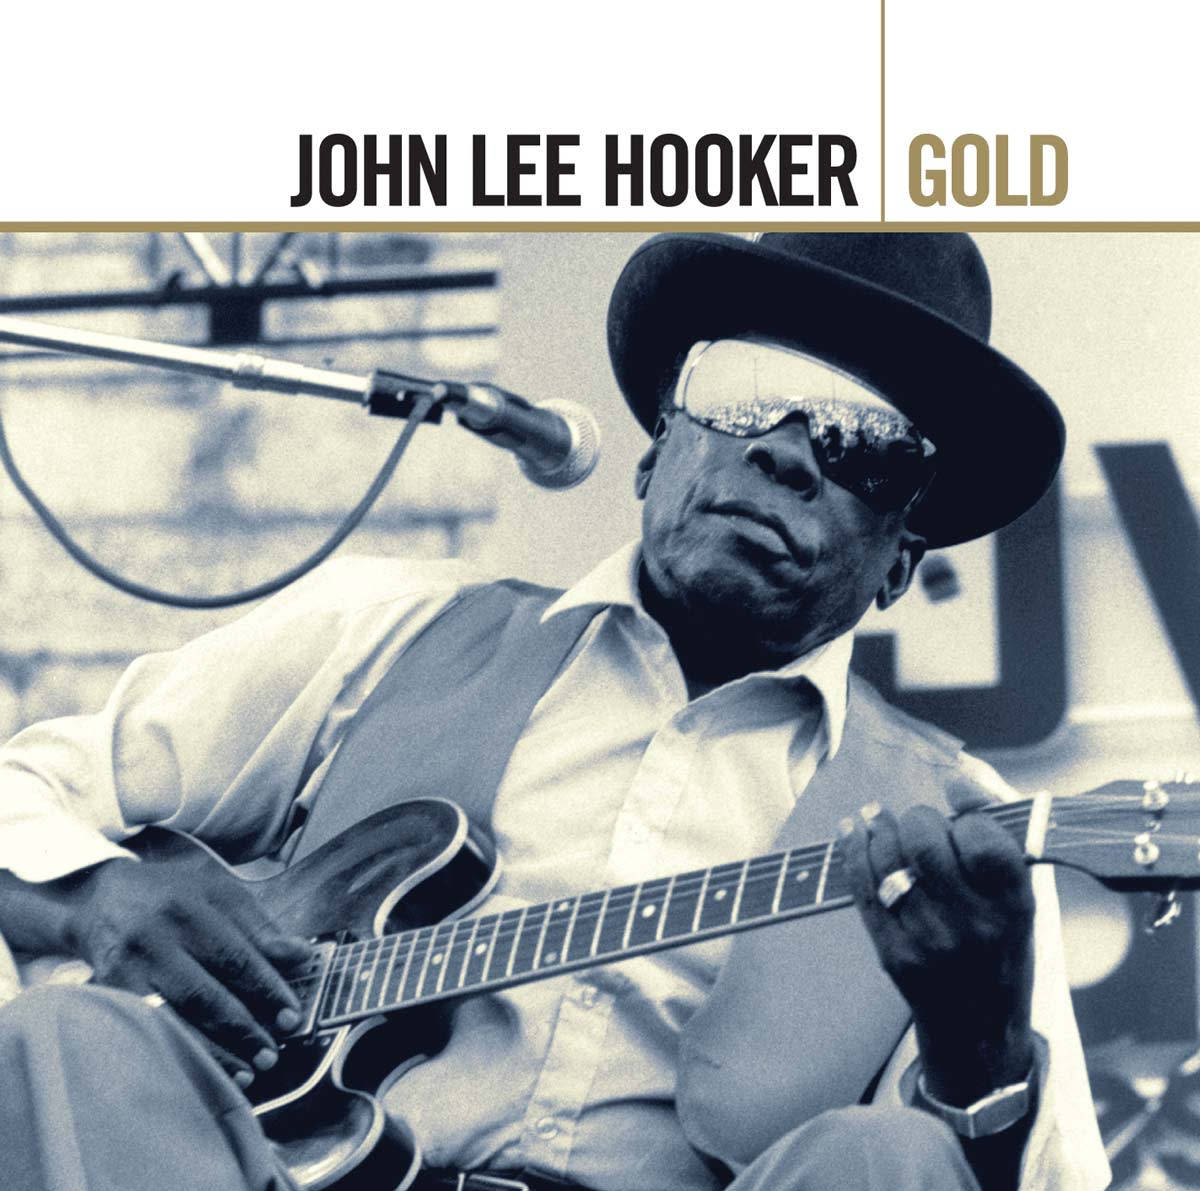 John Lee Hooker Gold Album Cover baggrundsbillede Wallpaper